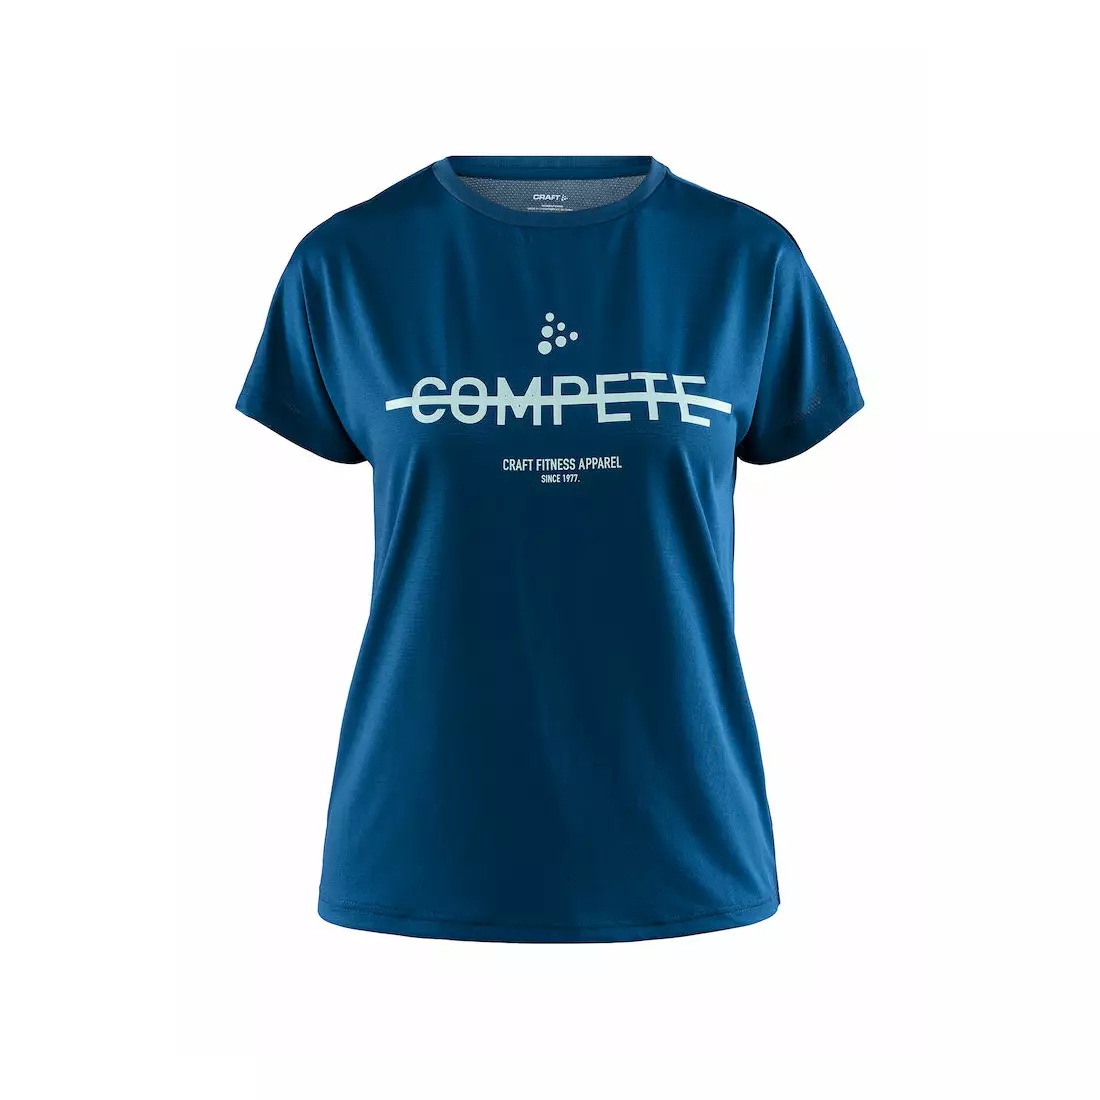 CRAFT EAZE MESH női sport / futó póló kék 1907019-373000